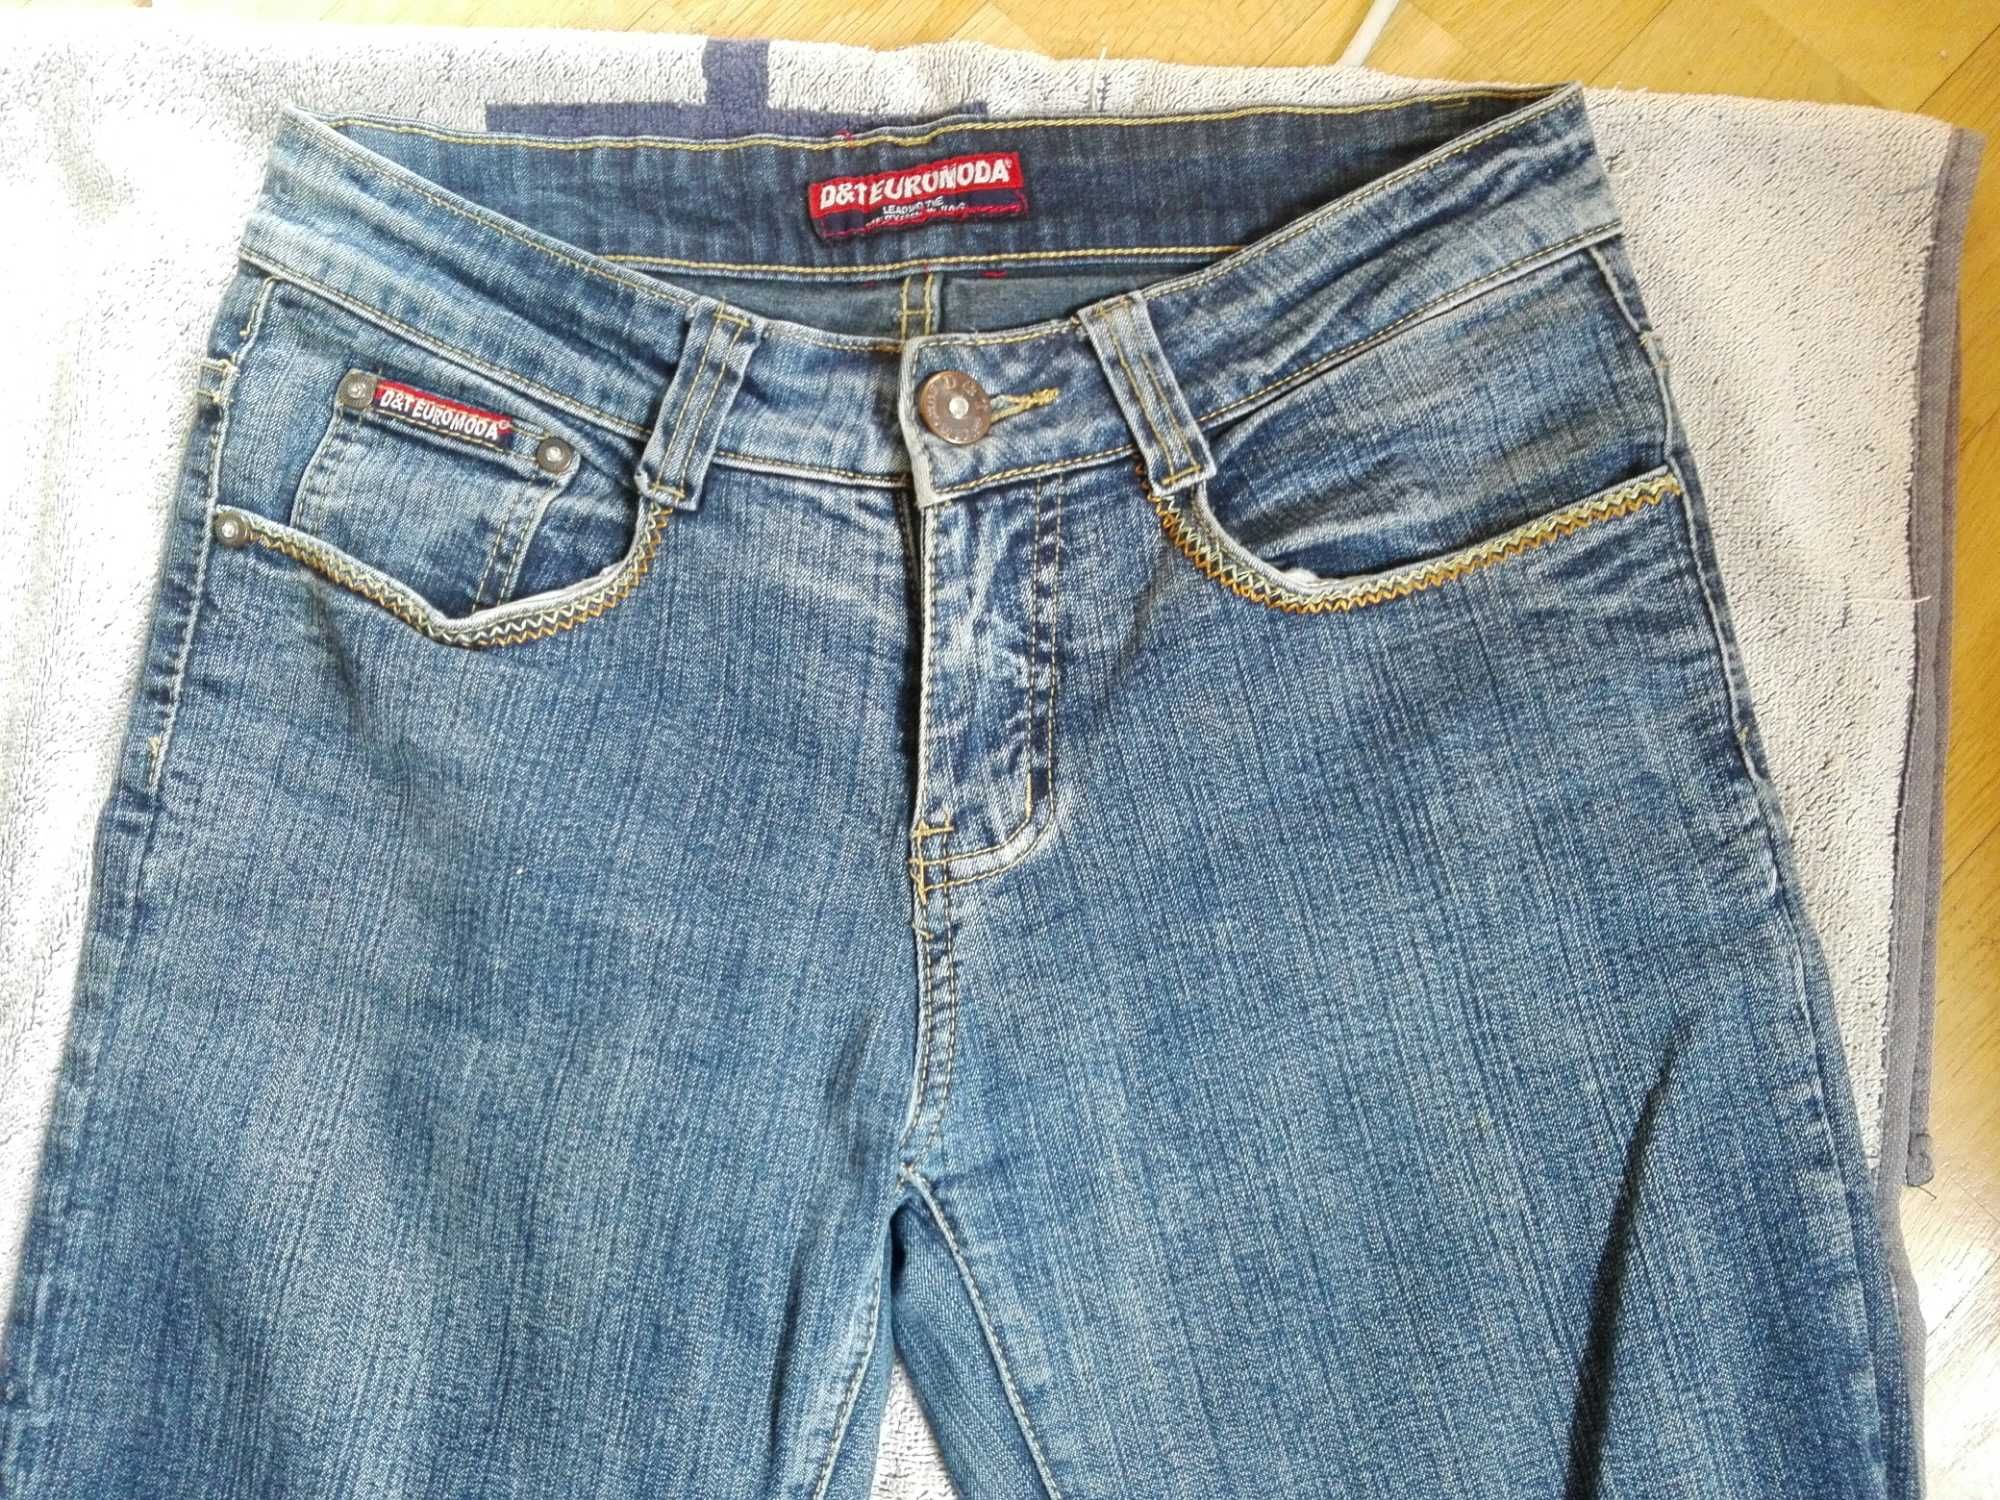 Damskie spodnie jeansowe S/M jeansy elastan stretch BDB